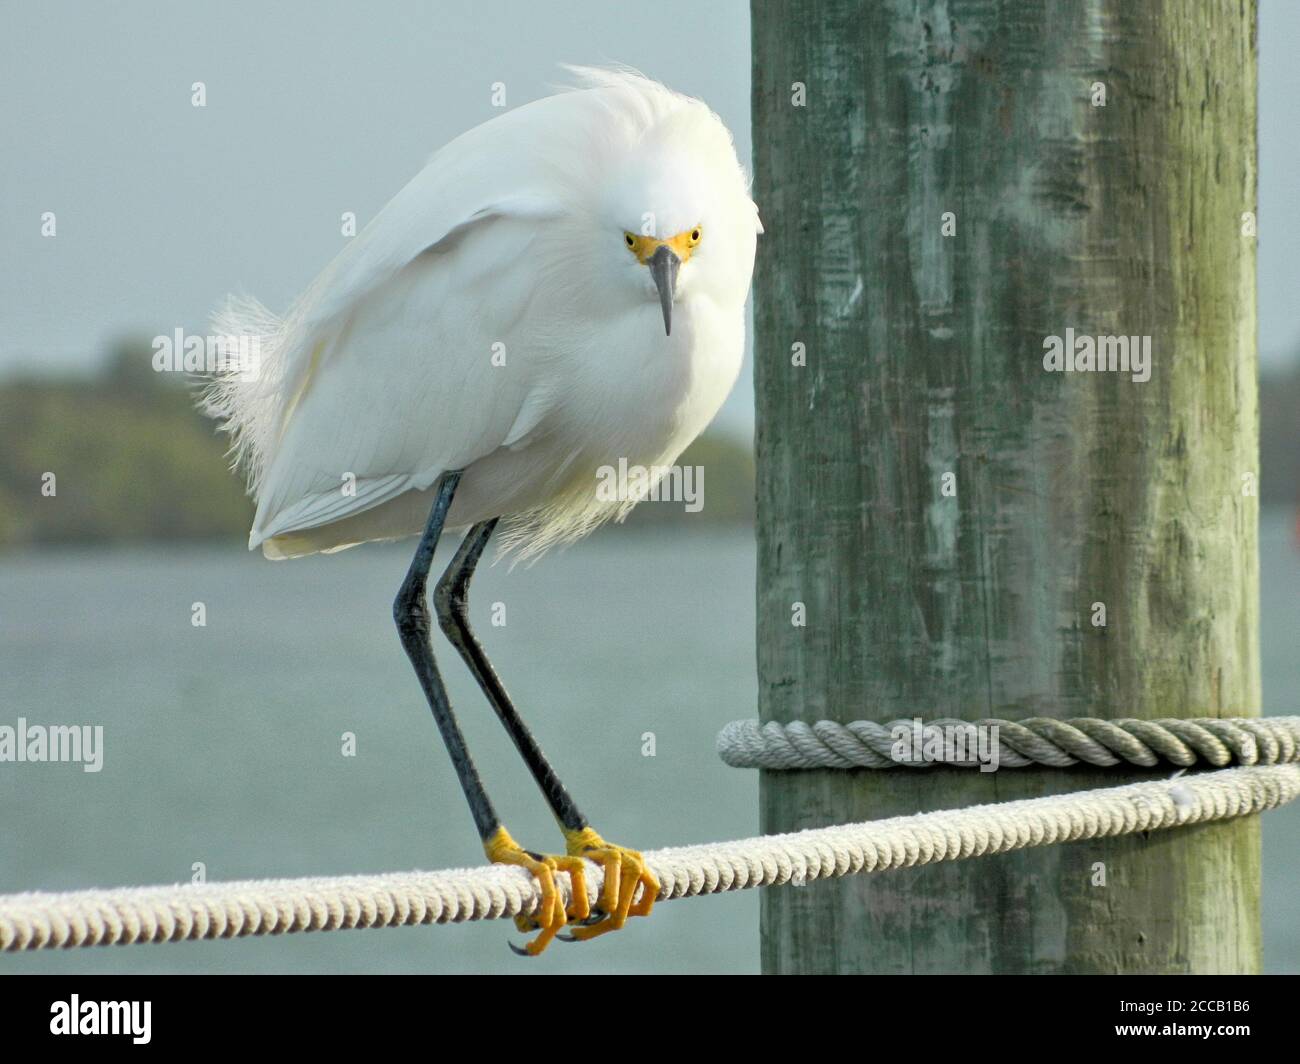 Verschneite Reiher (Egretta thula), die auf einem Seil thront und direkt auf die Kamera blickt. Ein Zugvogel mit weißen Features, langen schwarzen Schnabel und leuchtend gelben Füßen. Stockfoto